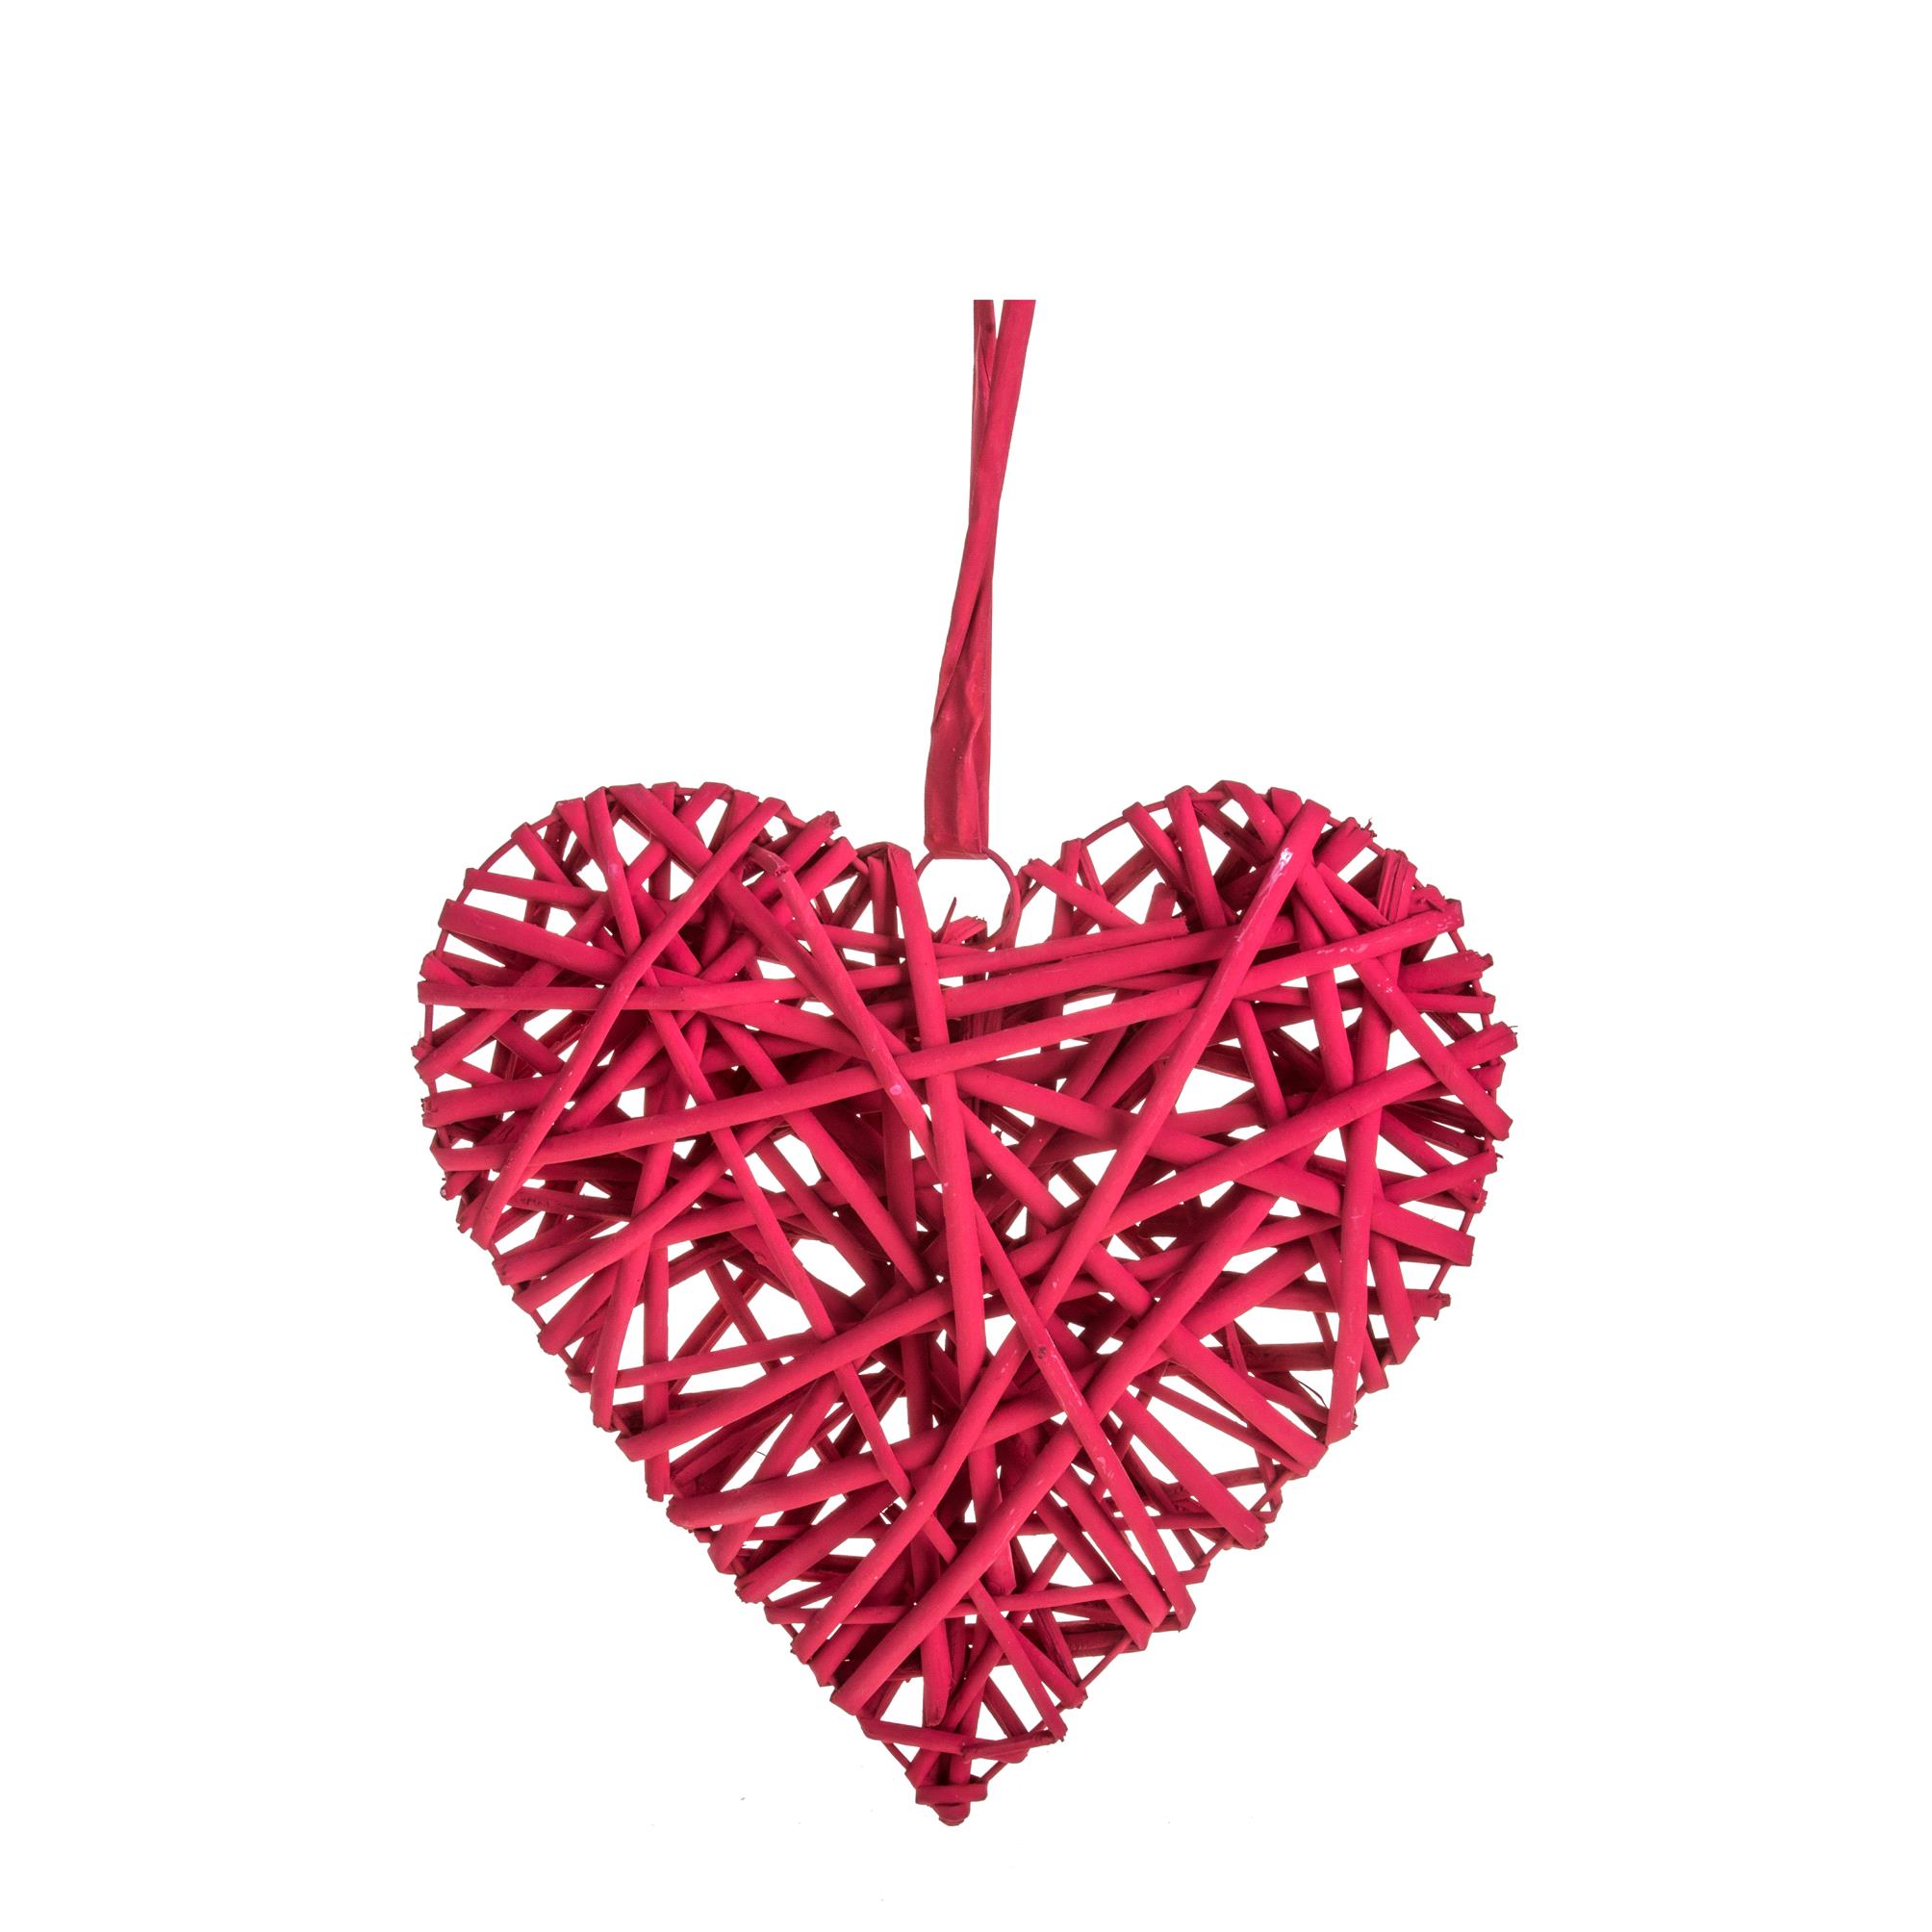 Herzen - Valentinstag  - Muttertag, HEARTS IN RATTAN UND ANDERE MATERIALIEN, CUORE 10 CM COLORATO